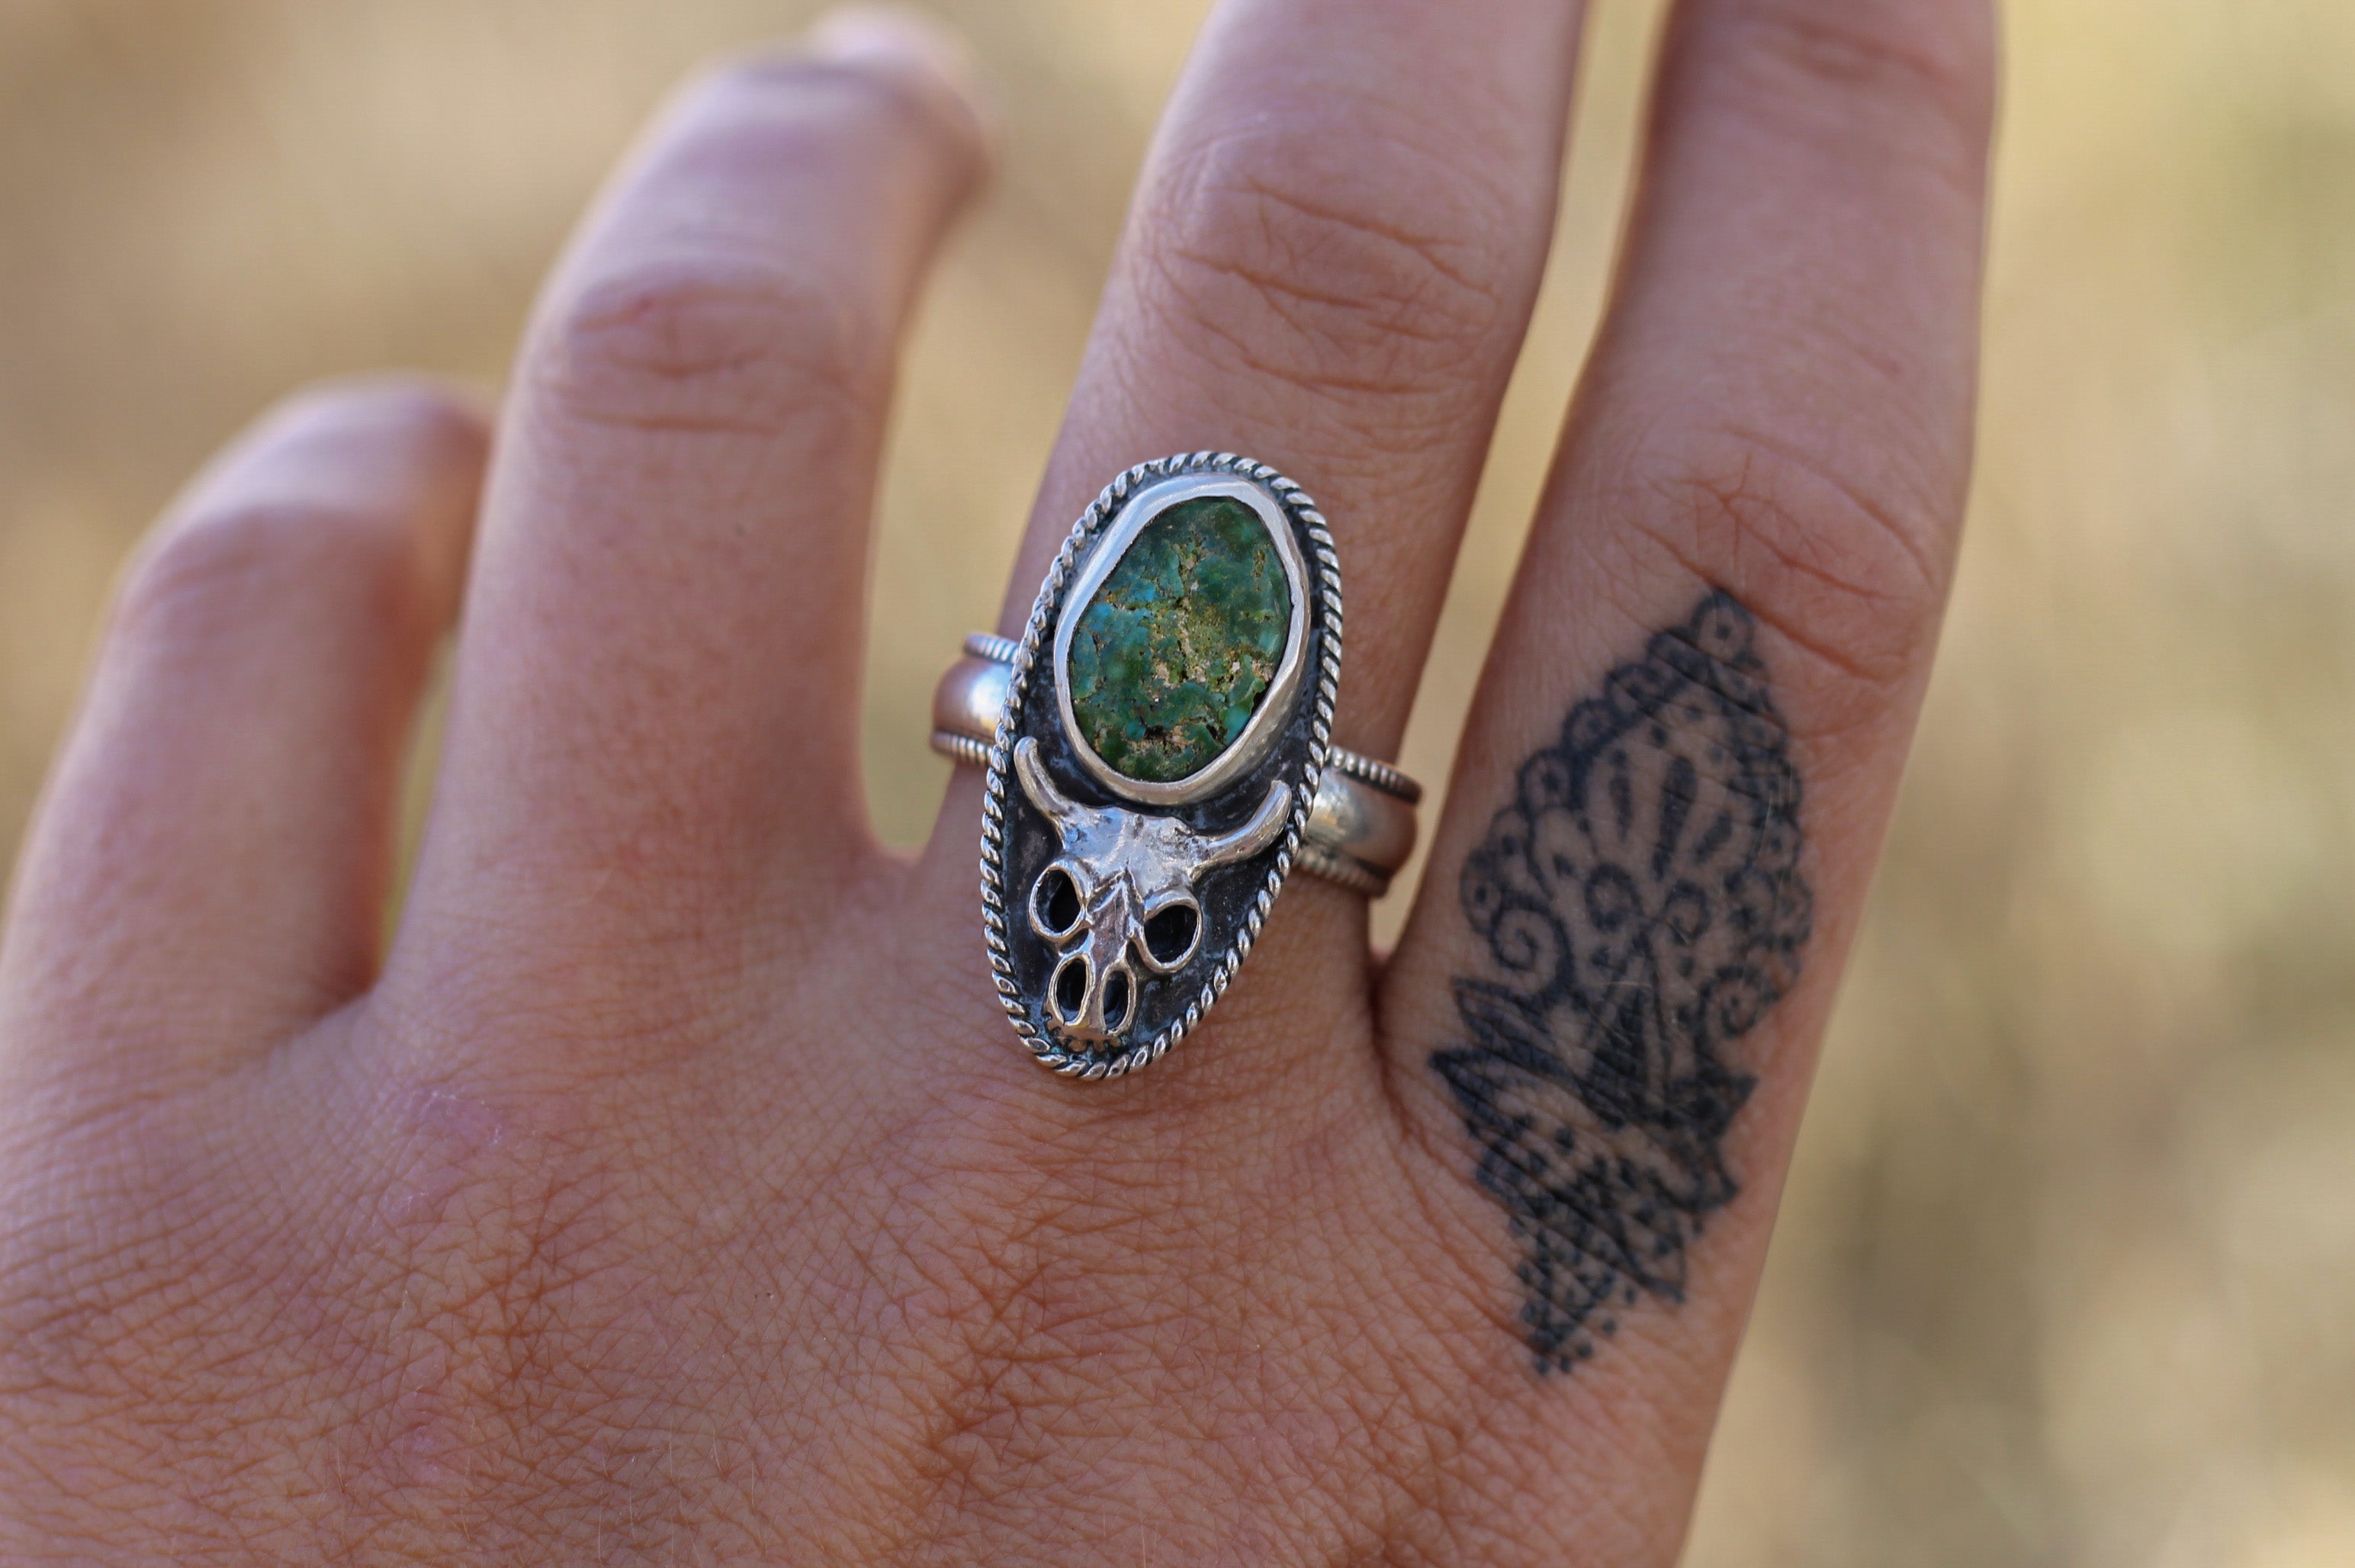 Turquoise Bull Skull Ring - Size 9.75